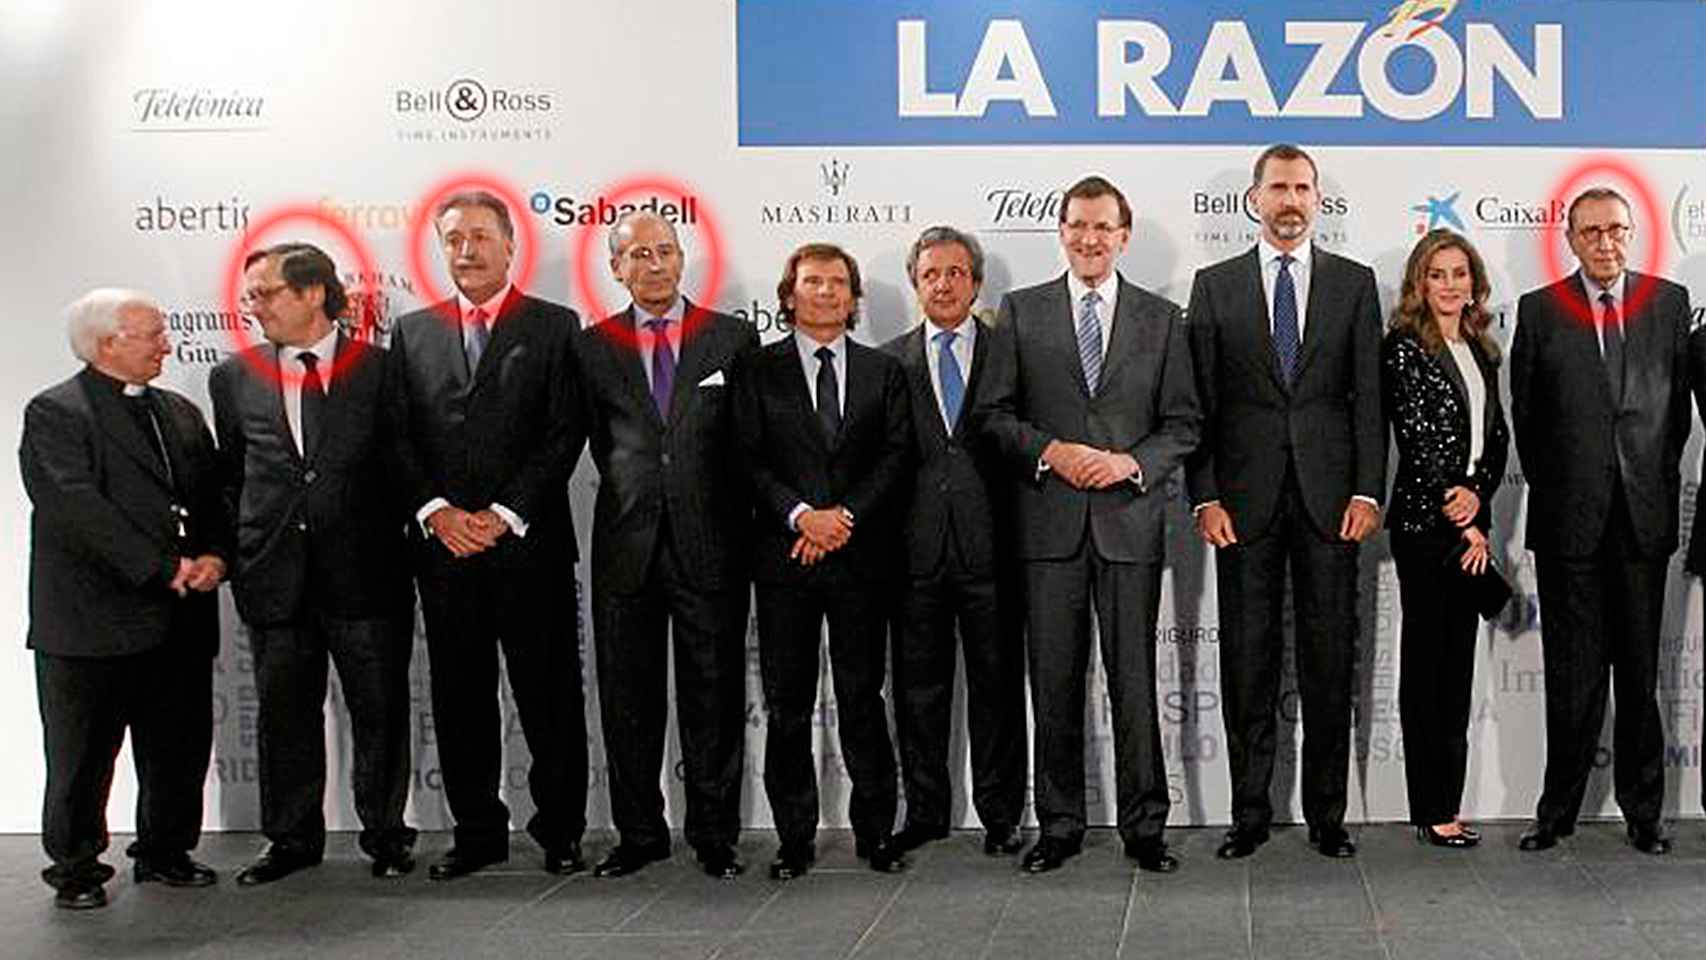 Los investigados de La Razón - Foto publicada por La Razón